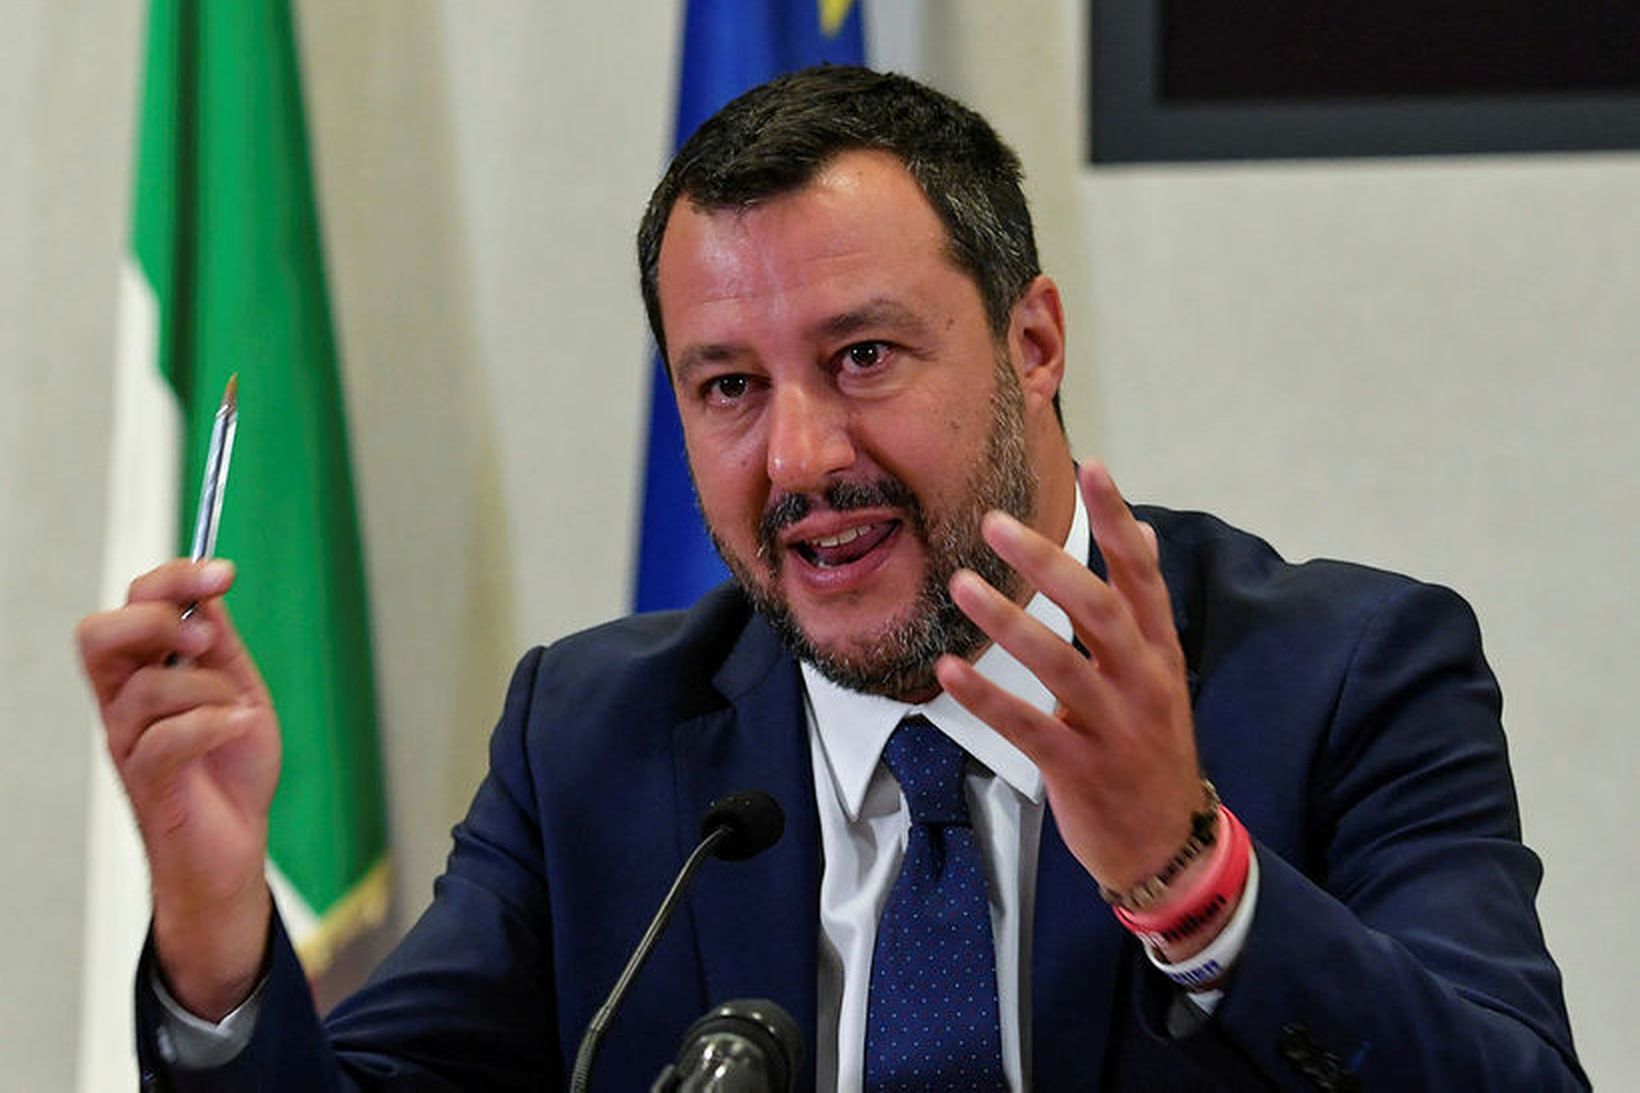 Matteo Salvini, varaforsætisráðherra Ítalíu.